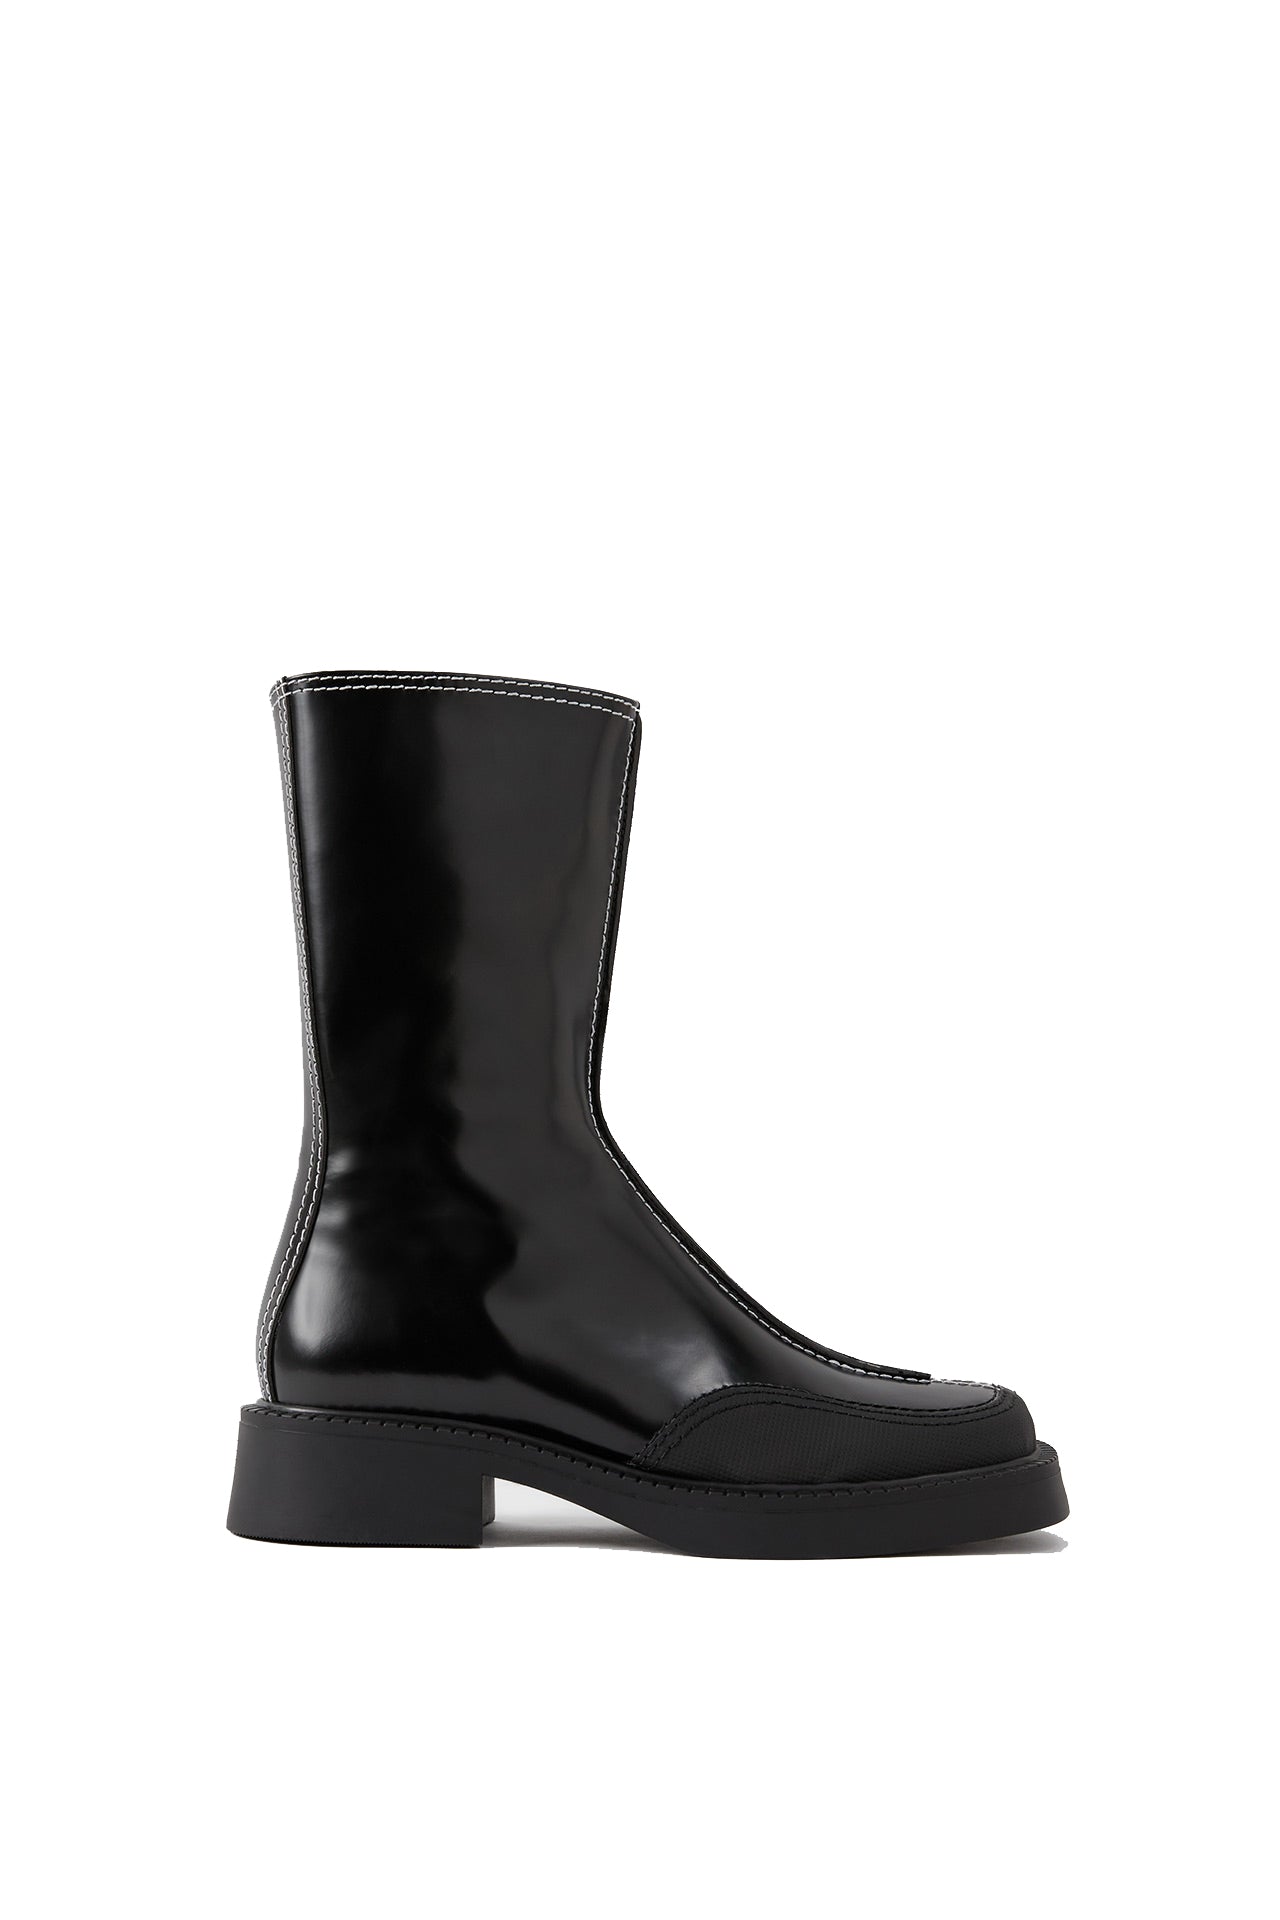 Tora Black Boots – DAMERNES MAGASIN